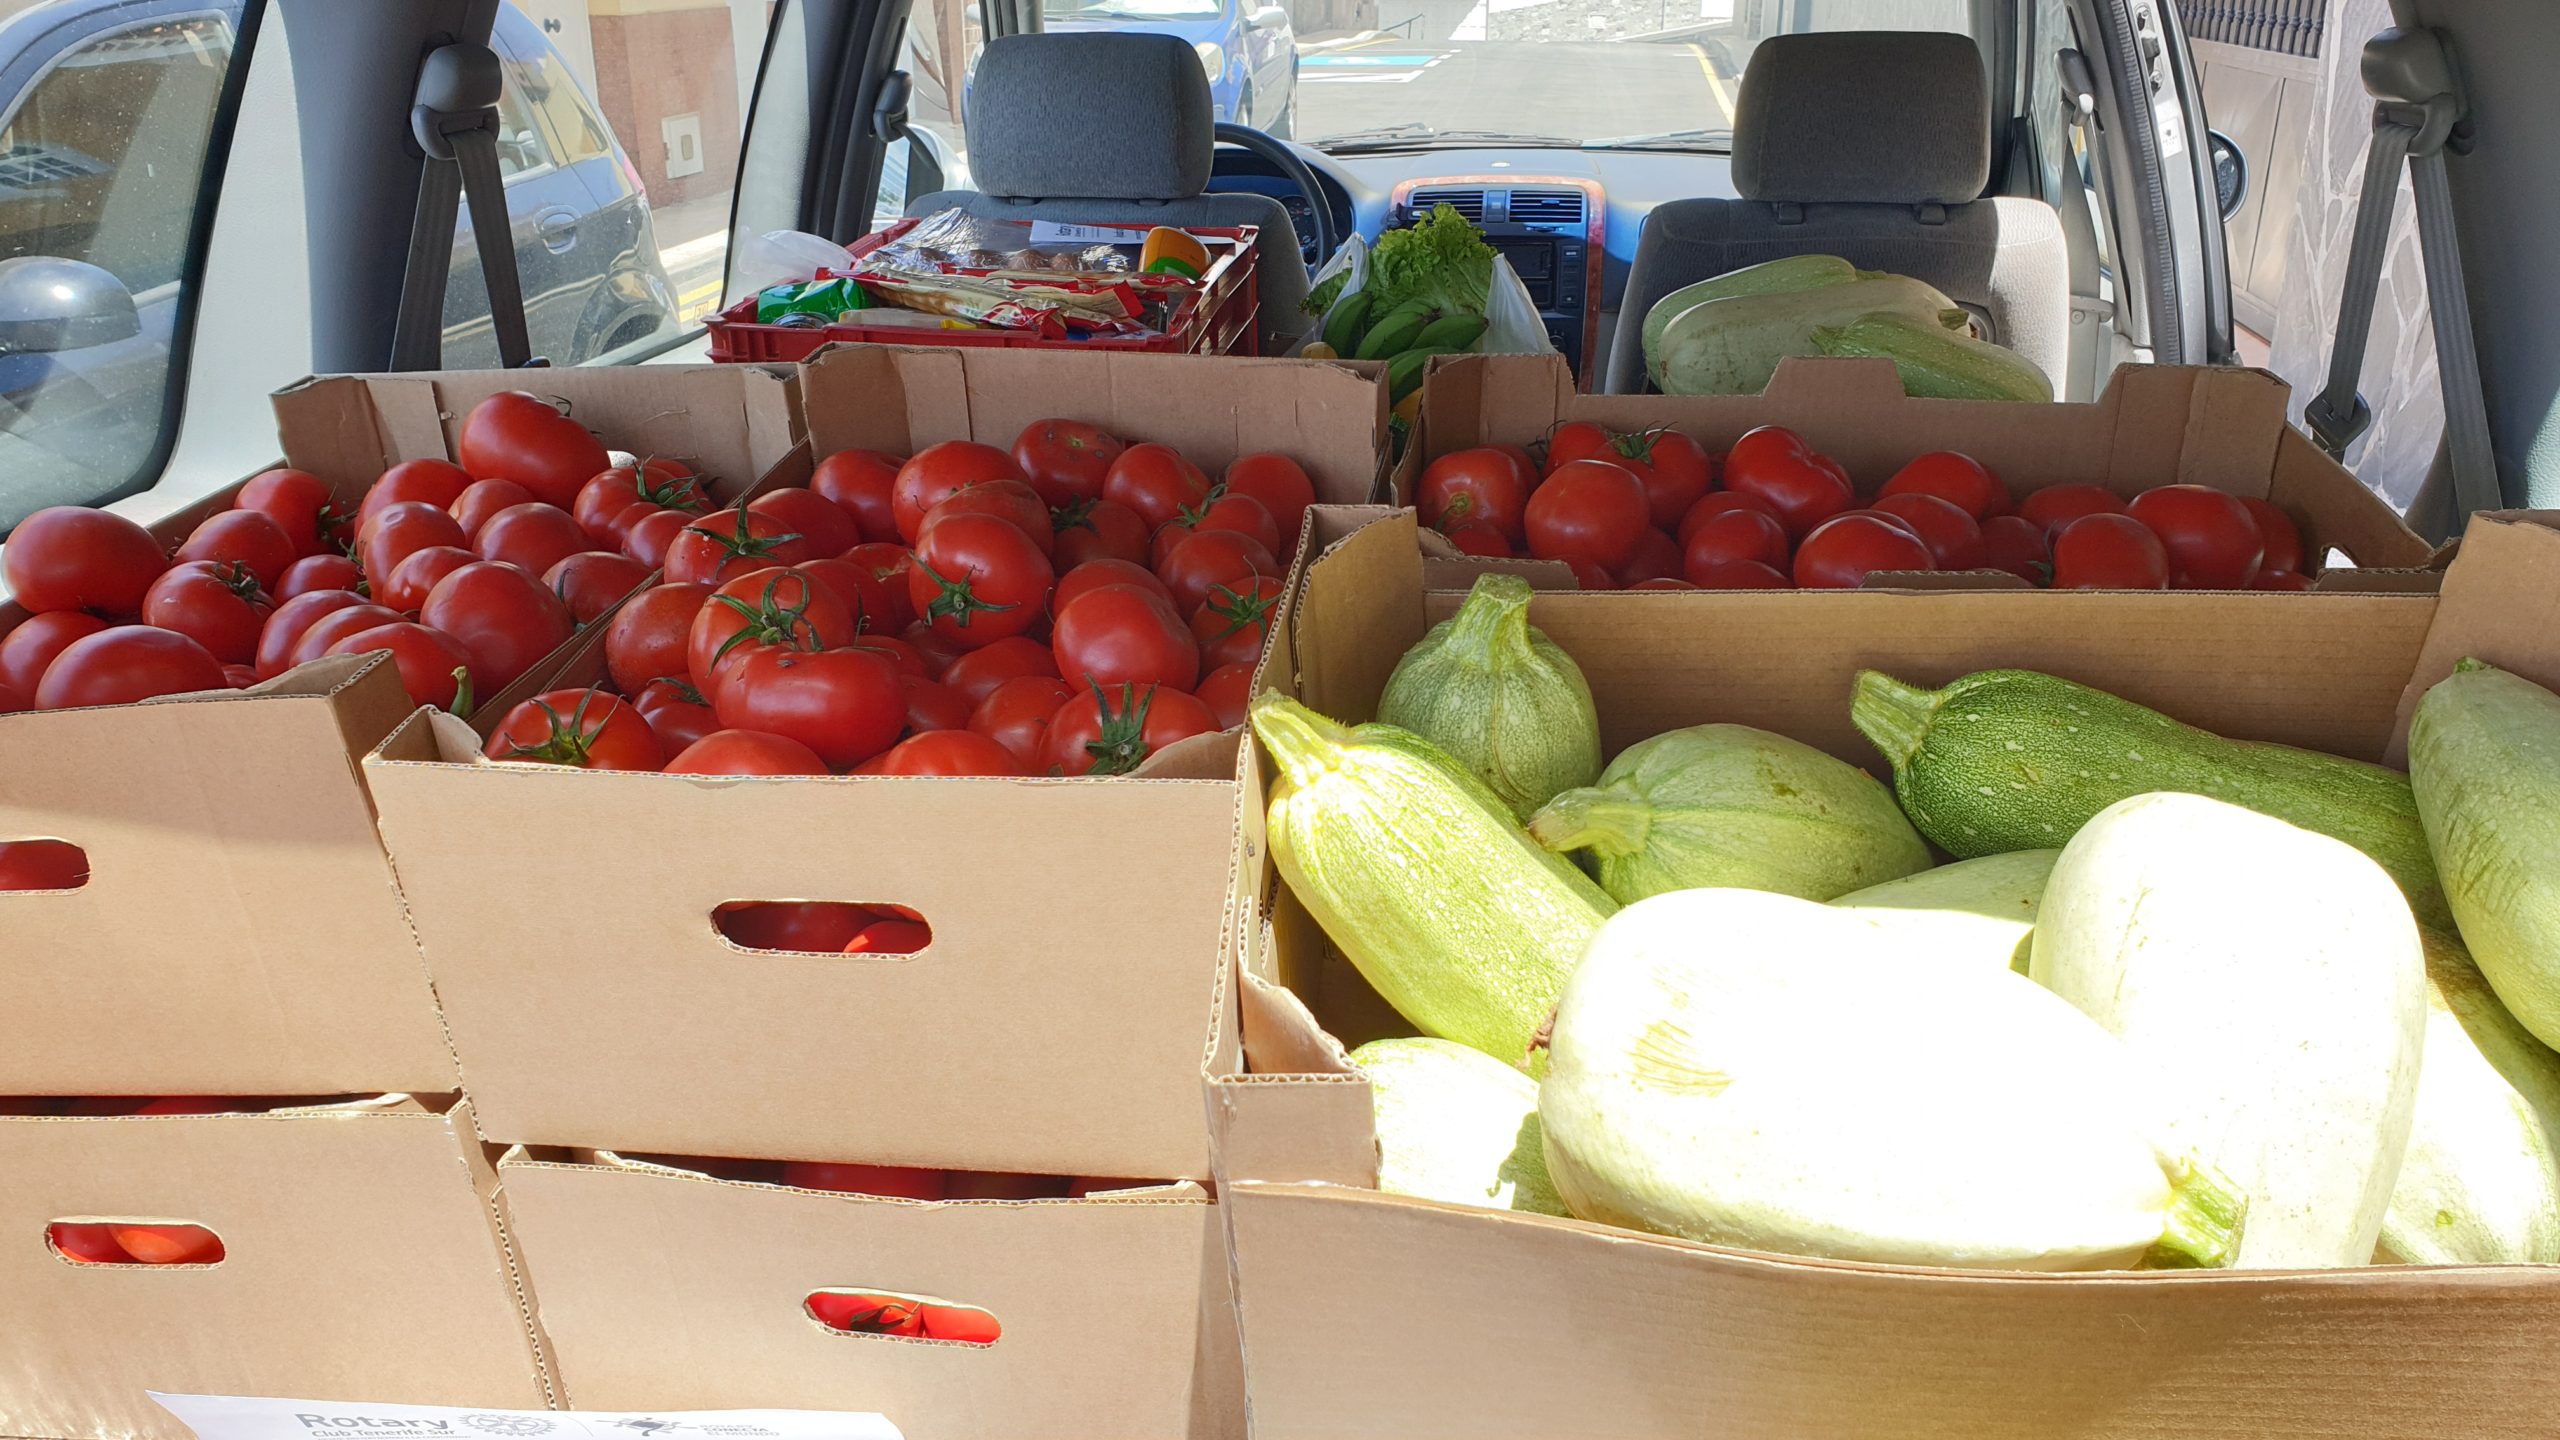 Rotary Club dona una cantidad importante de tomates y bubangos a la asociación Arca de Noé de Adeje, Tenerife